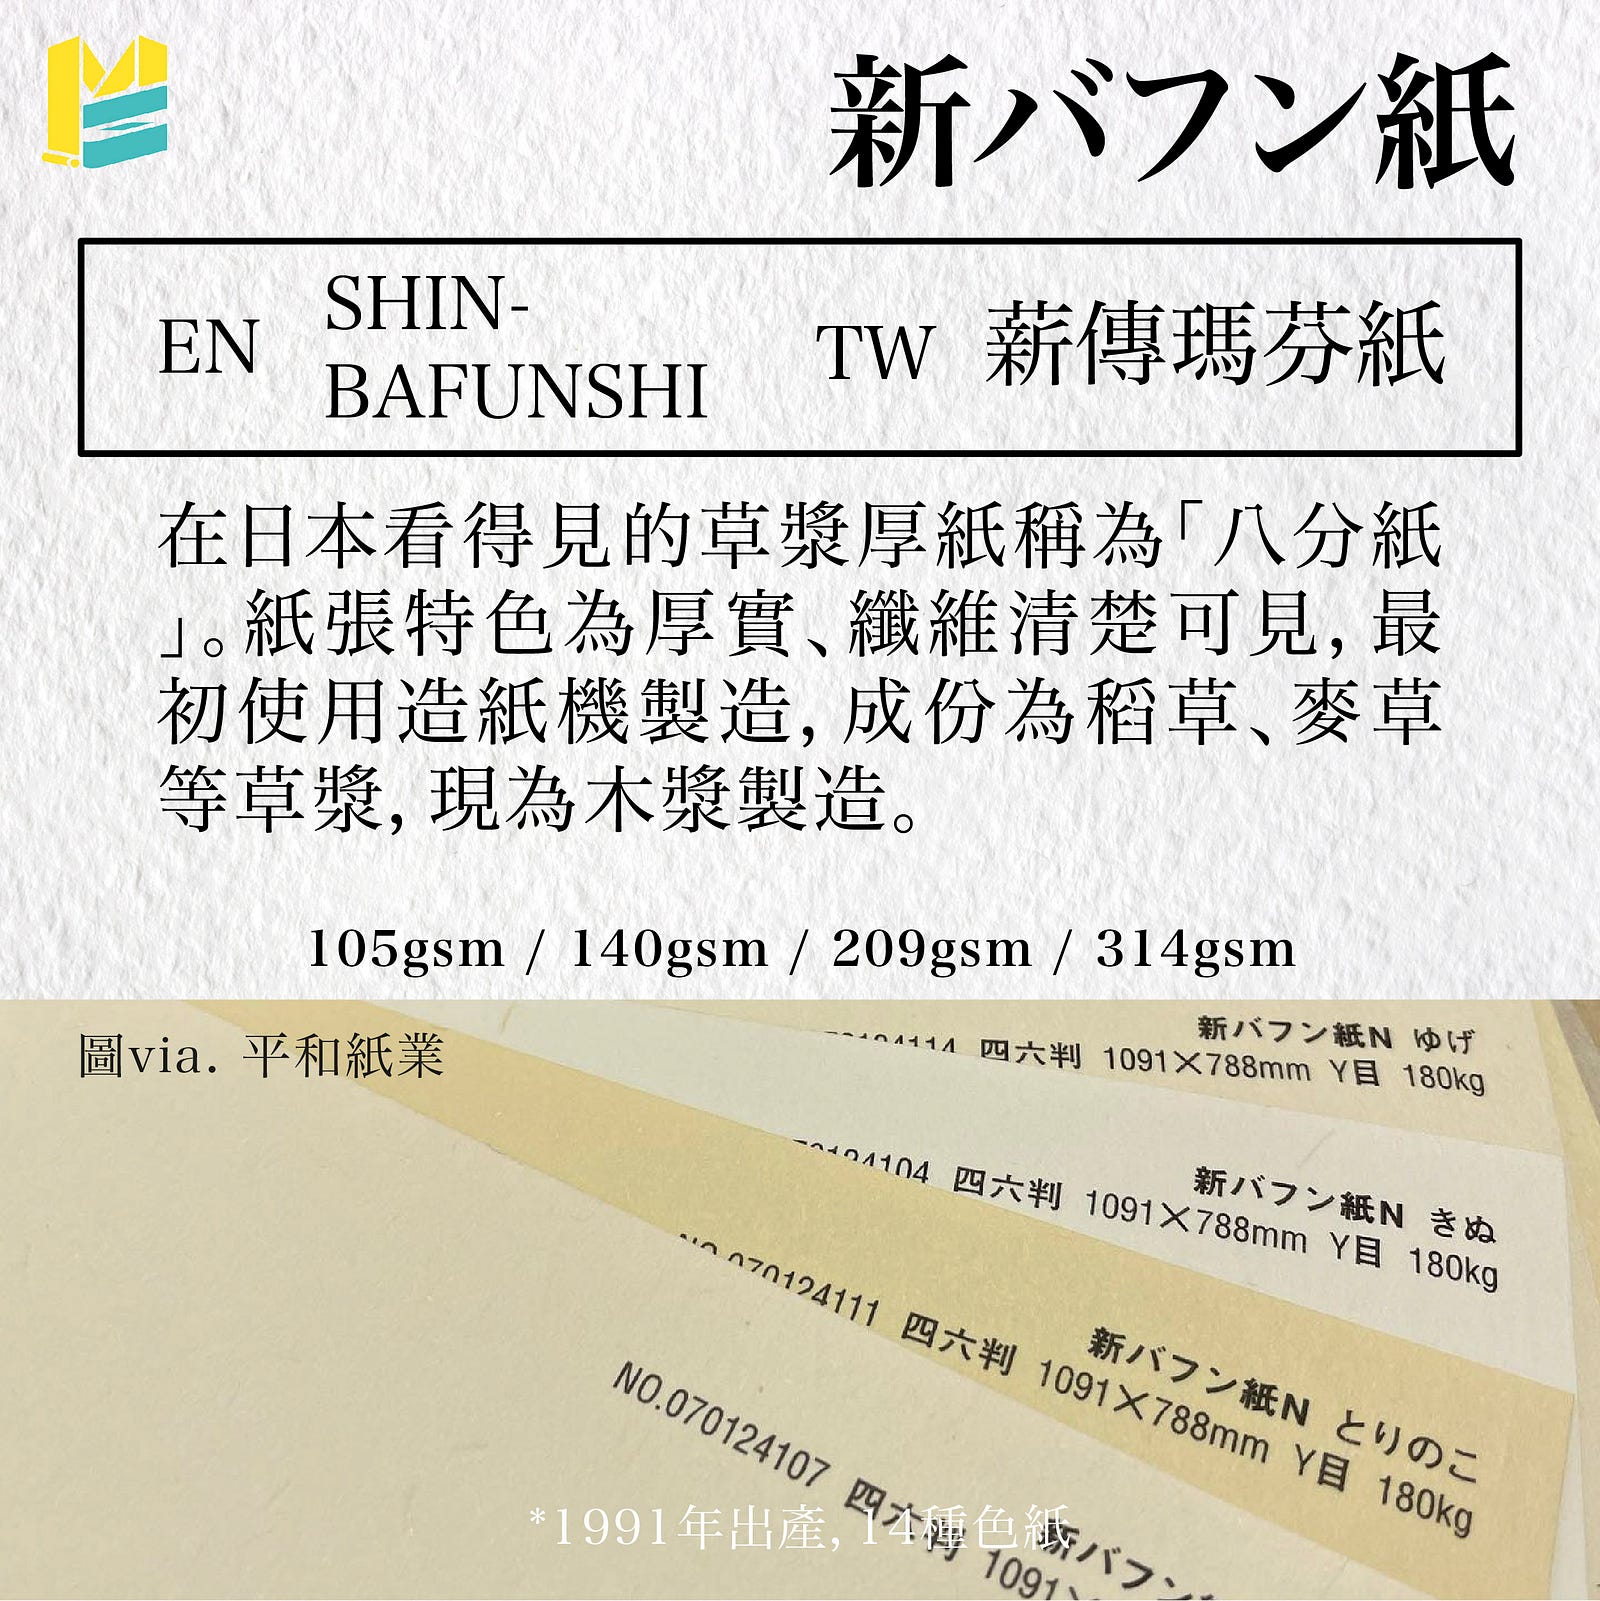 紙張名稱對照表－新バフン紙 (英：SHIN-BAFUNSHI，台：薪傳瑪芬紙)